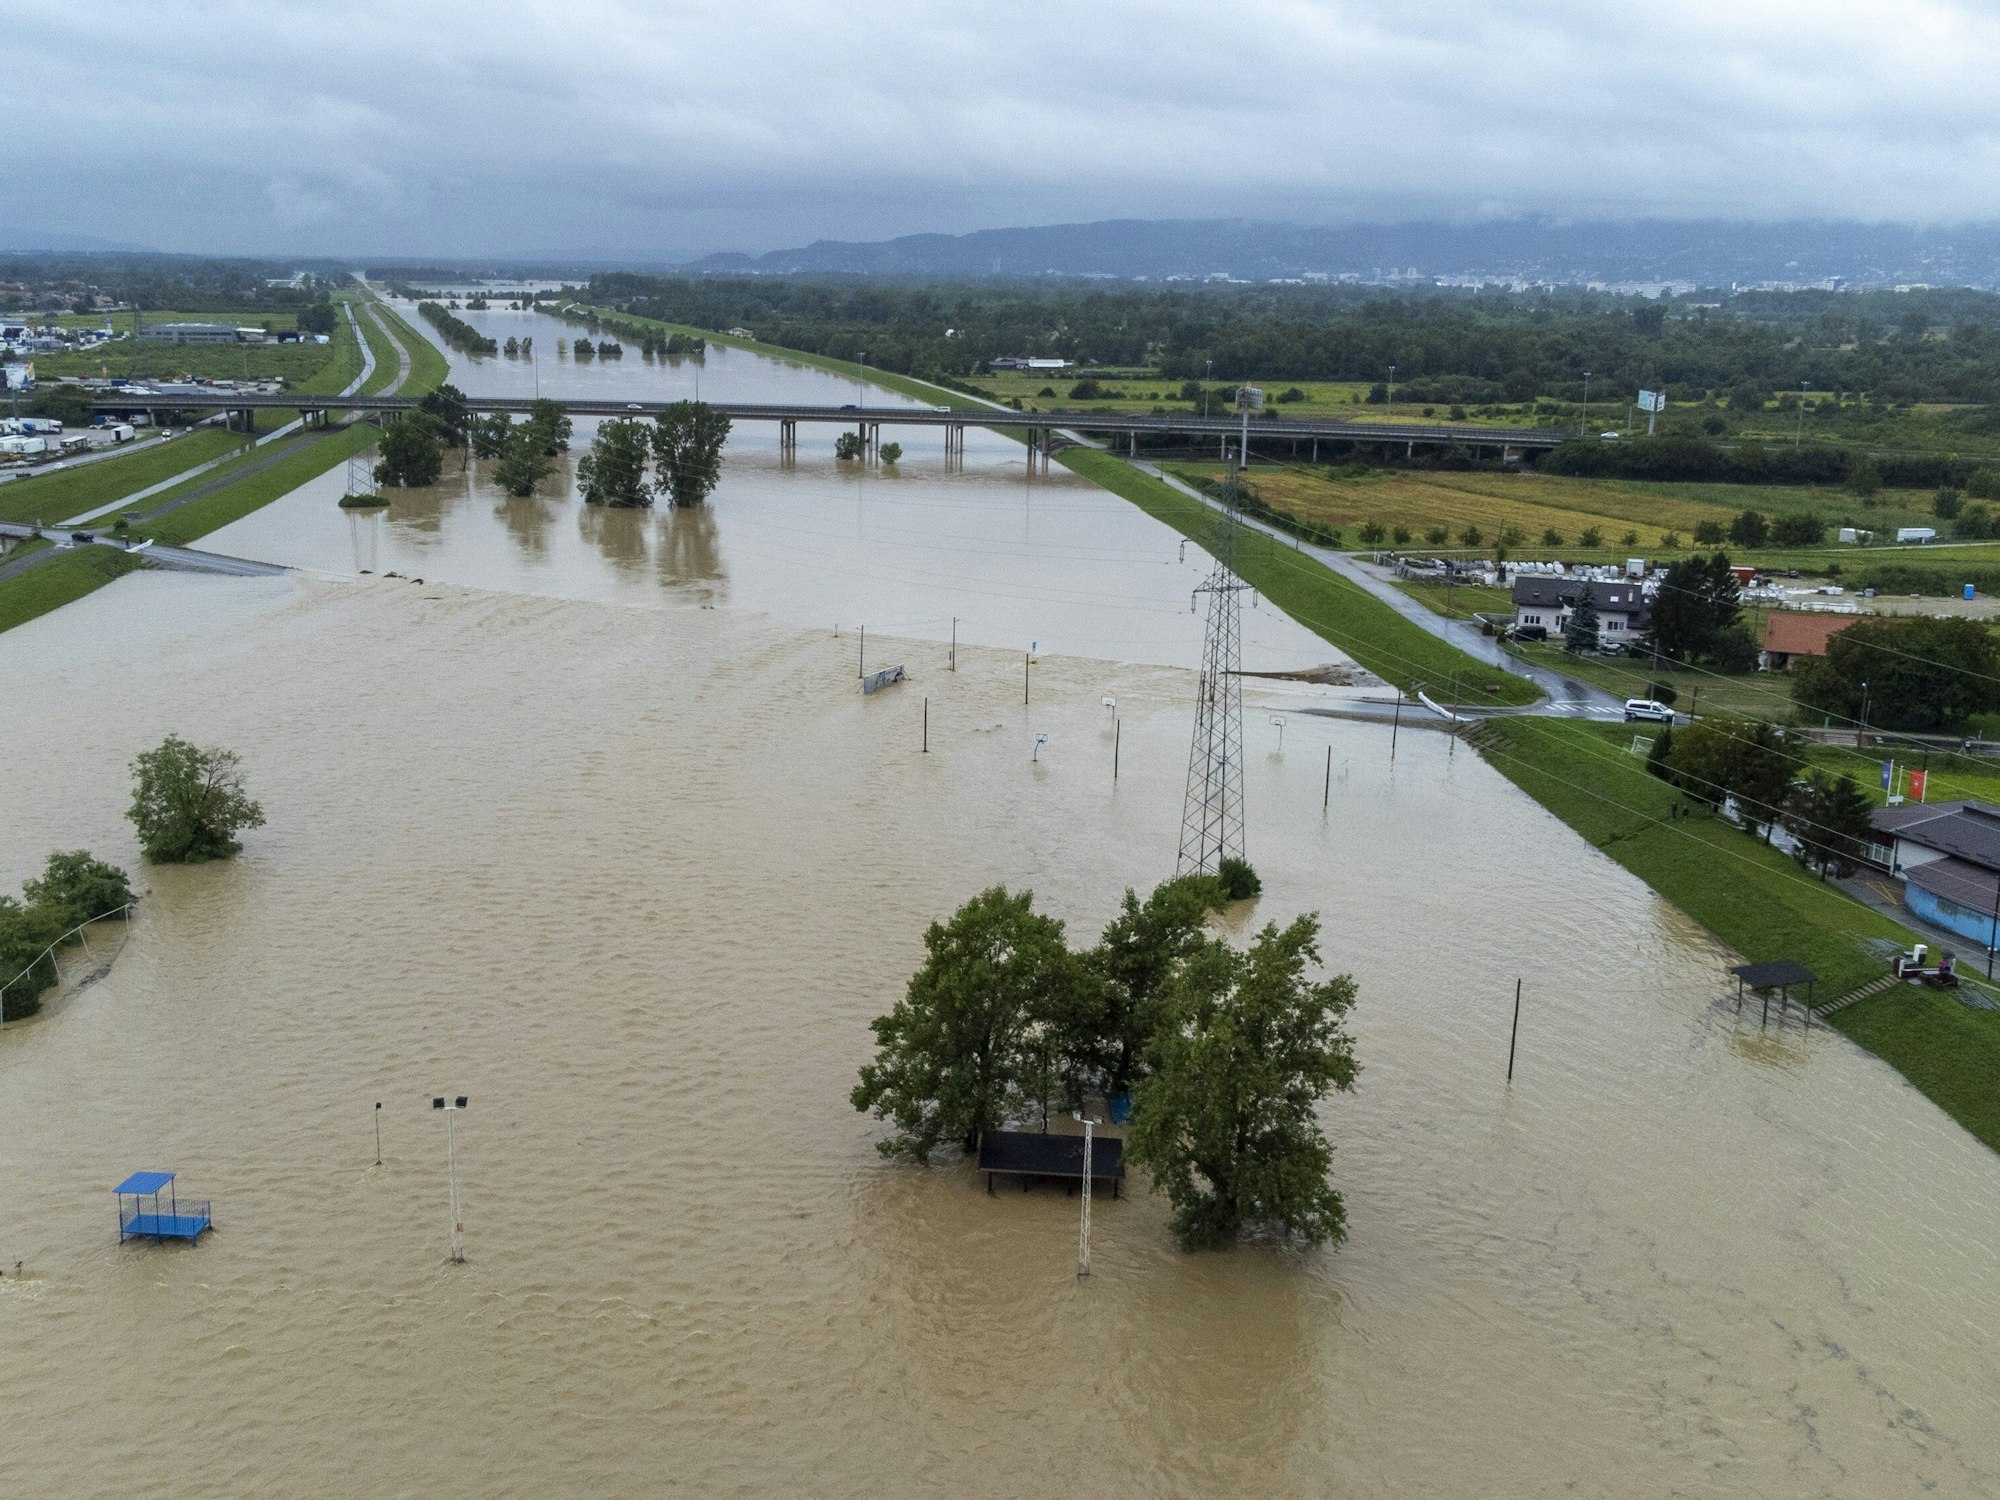 Die Luftaufnahme zeigt einen Blick auf die Überschwemmungen, die durch das Überlaufen des Flusses Sava in der Nähe von Zagreb verursacht wurden.